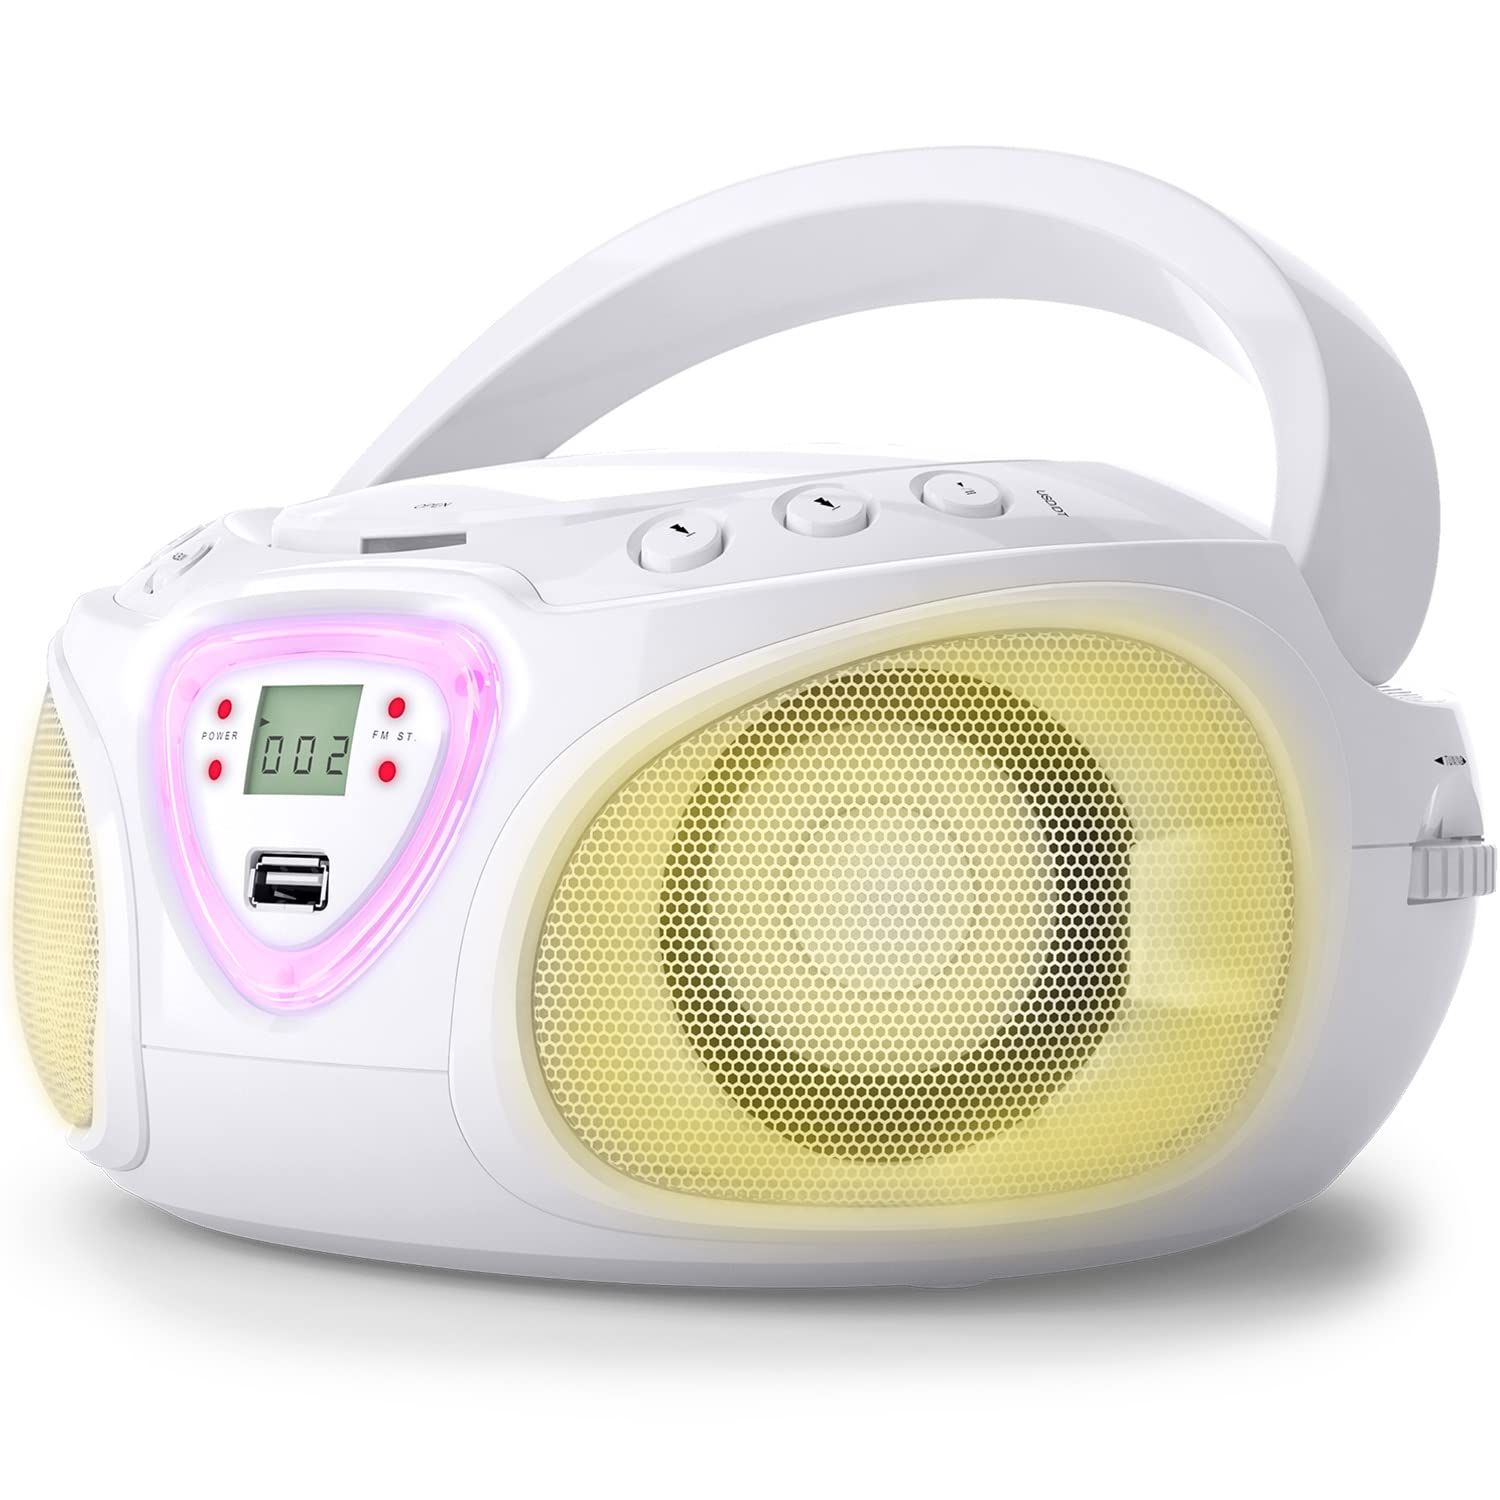 Auna Tragbarer Radio mit CD Player & mit USB für Kinder & Erwachsene, 3 W Boombox mit Bluetooth Funktion, AUX/FM Tragbar mit LED-Display, MP3, 5.0 Streaming mit für Mädchen & Jungen, Weiß